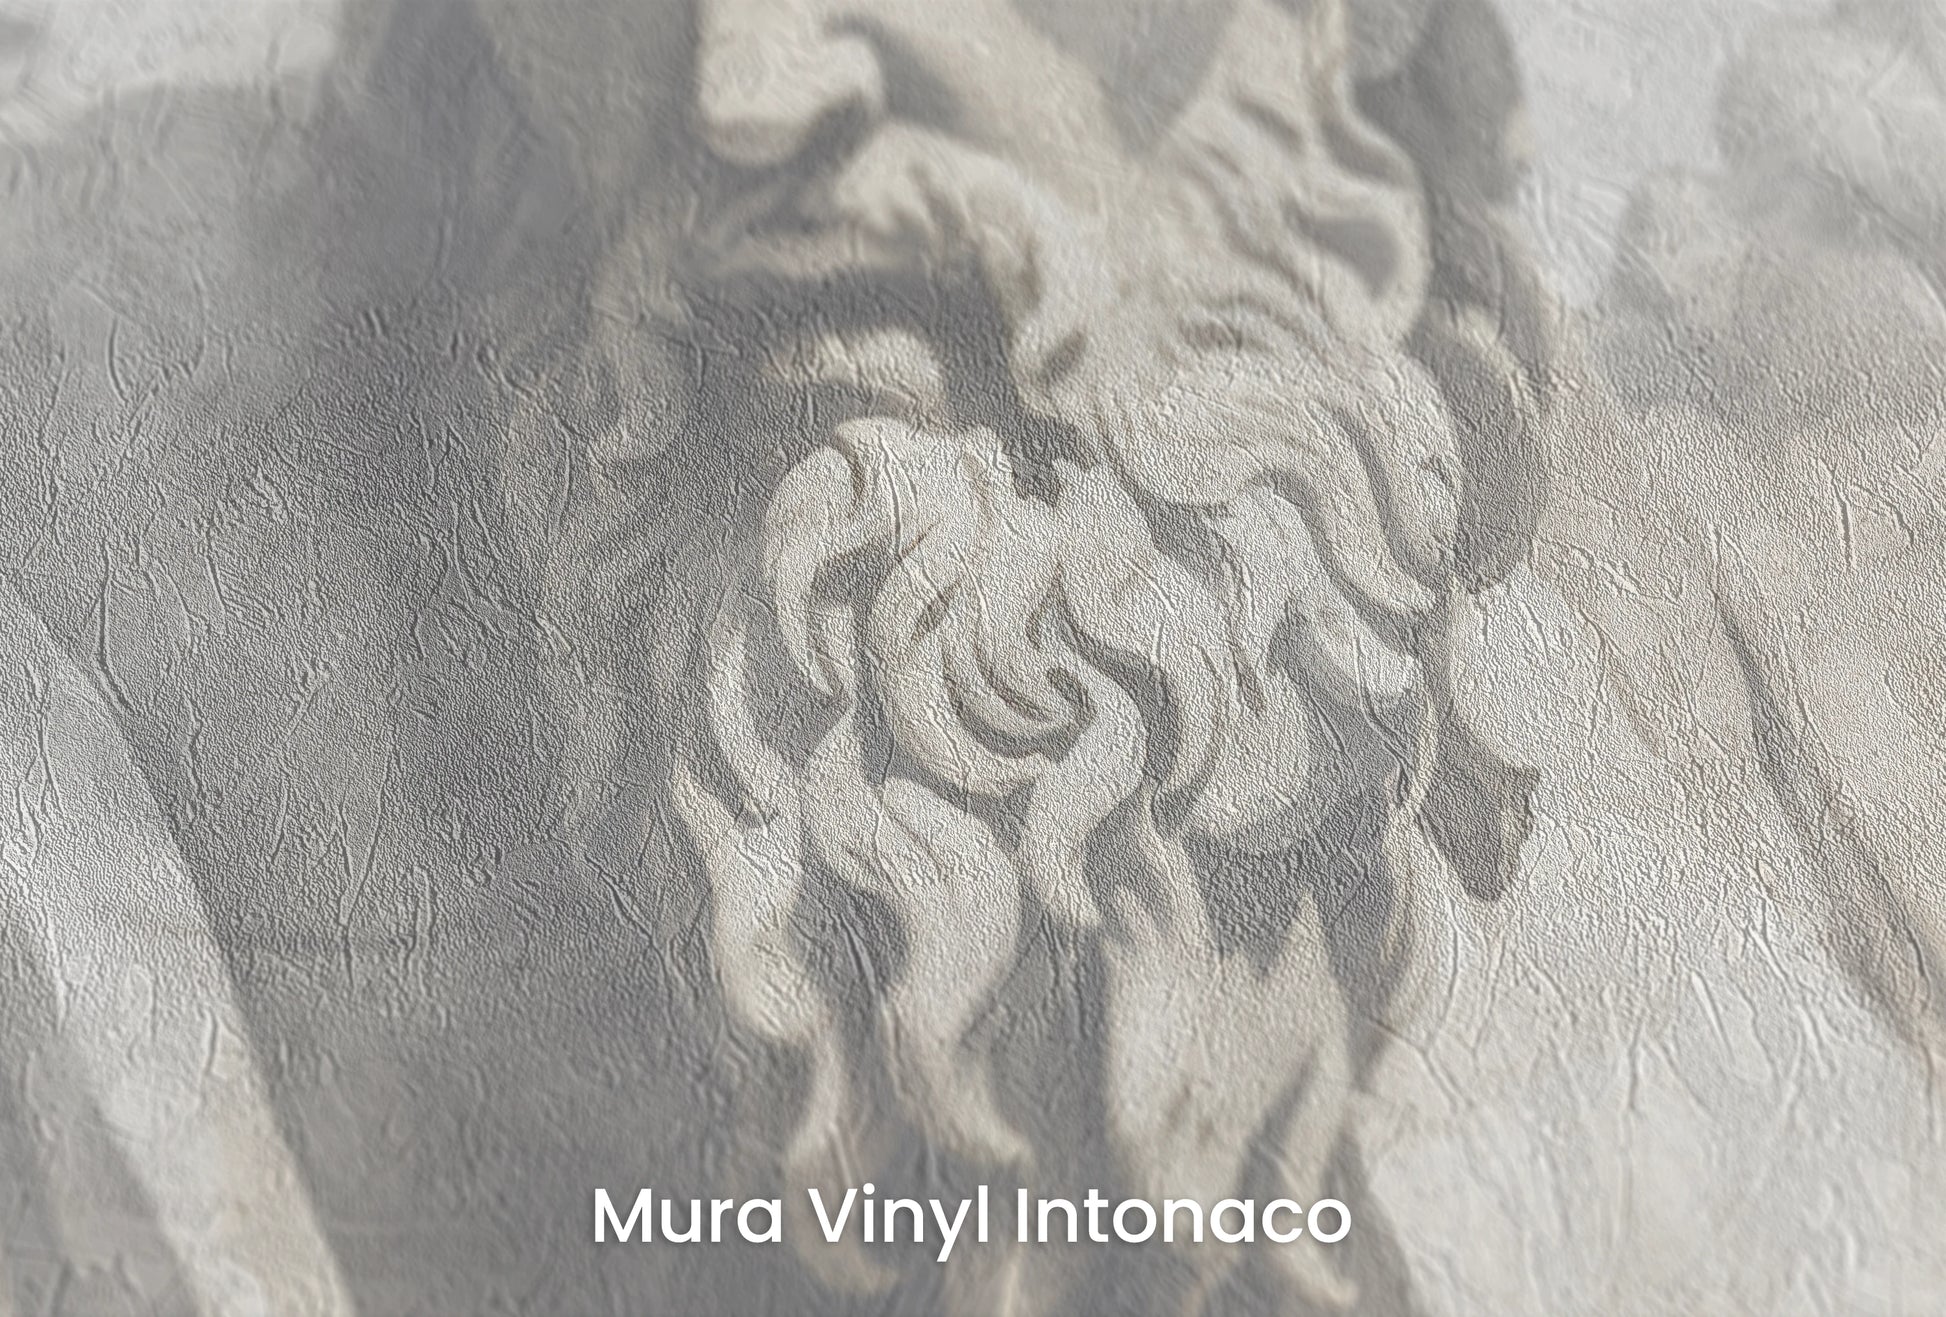 Zbliżenie na artystyczną fototapetę o nazwie Zeus's Contemplation na podłożu Mura Vinyl Intonaco - struktura tartego tynku.